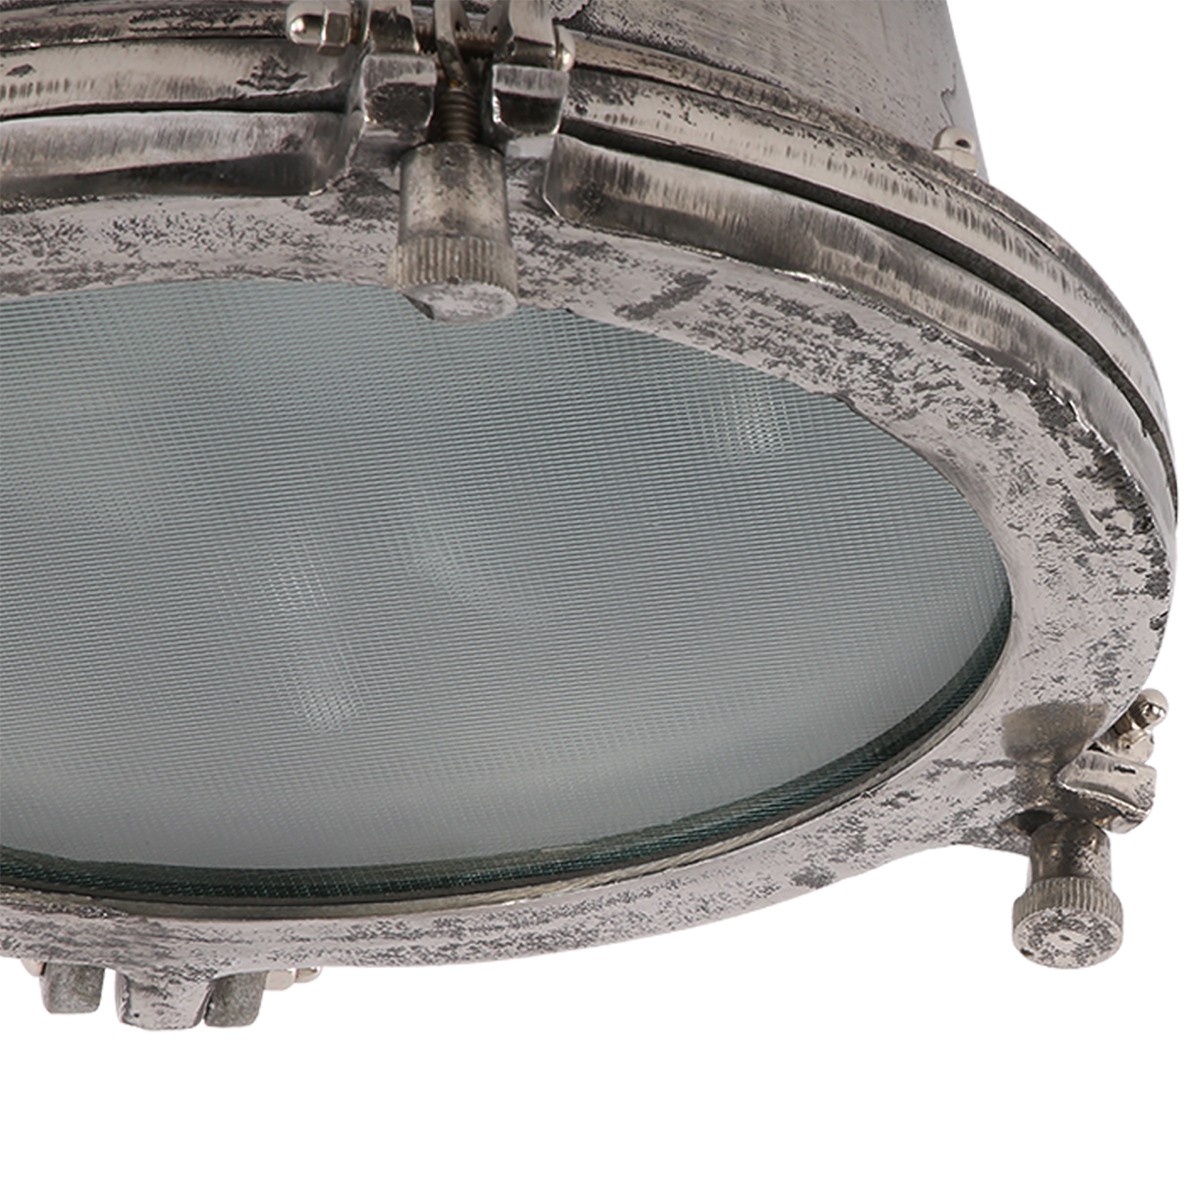 Deckenleuchte rund Industriedesign, Deckenlampe silber-antik Industrie, Durchmesser 32 cm